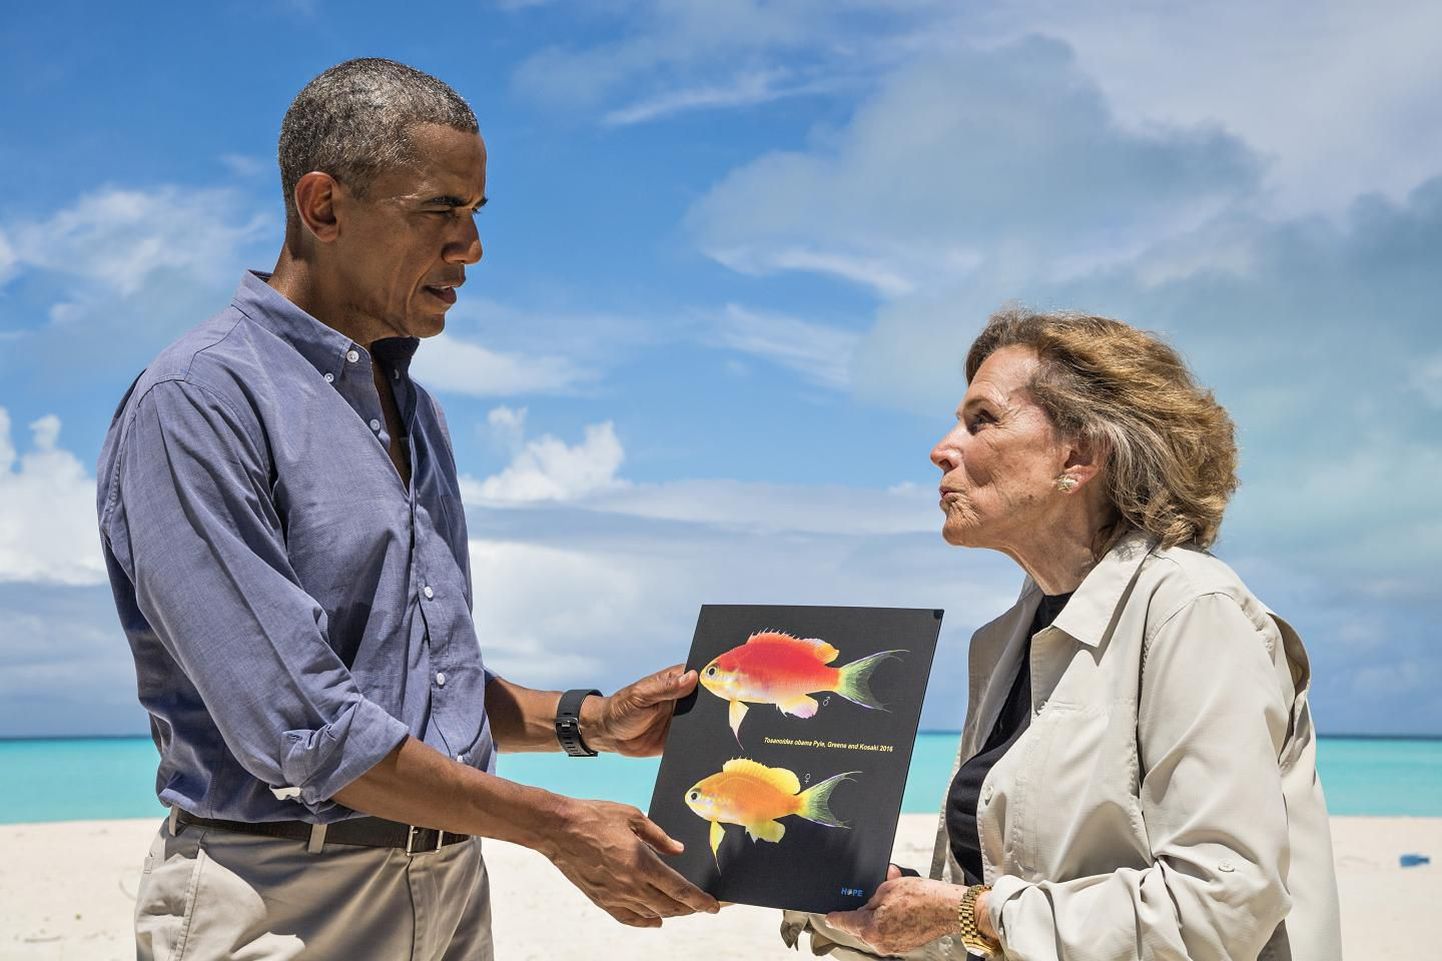 Obamale antakse üle temanimelist kala Tosanoides obama kujutav pilt.